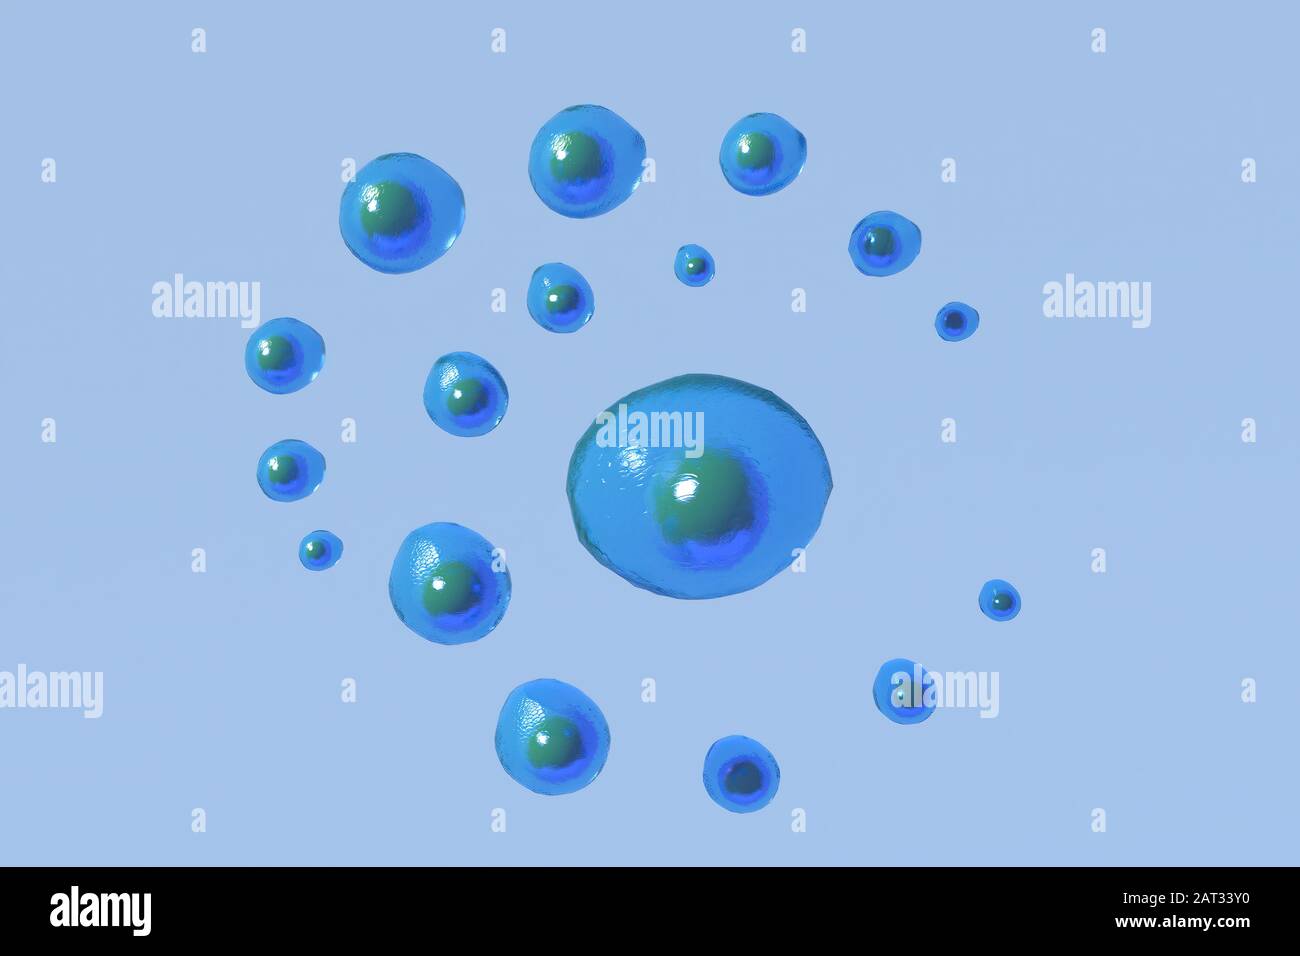 Das 3D-Rendering der Zellbiologie befasst sich mit der kleinsten Lebenseinheit. Stockfoto